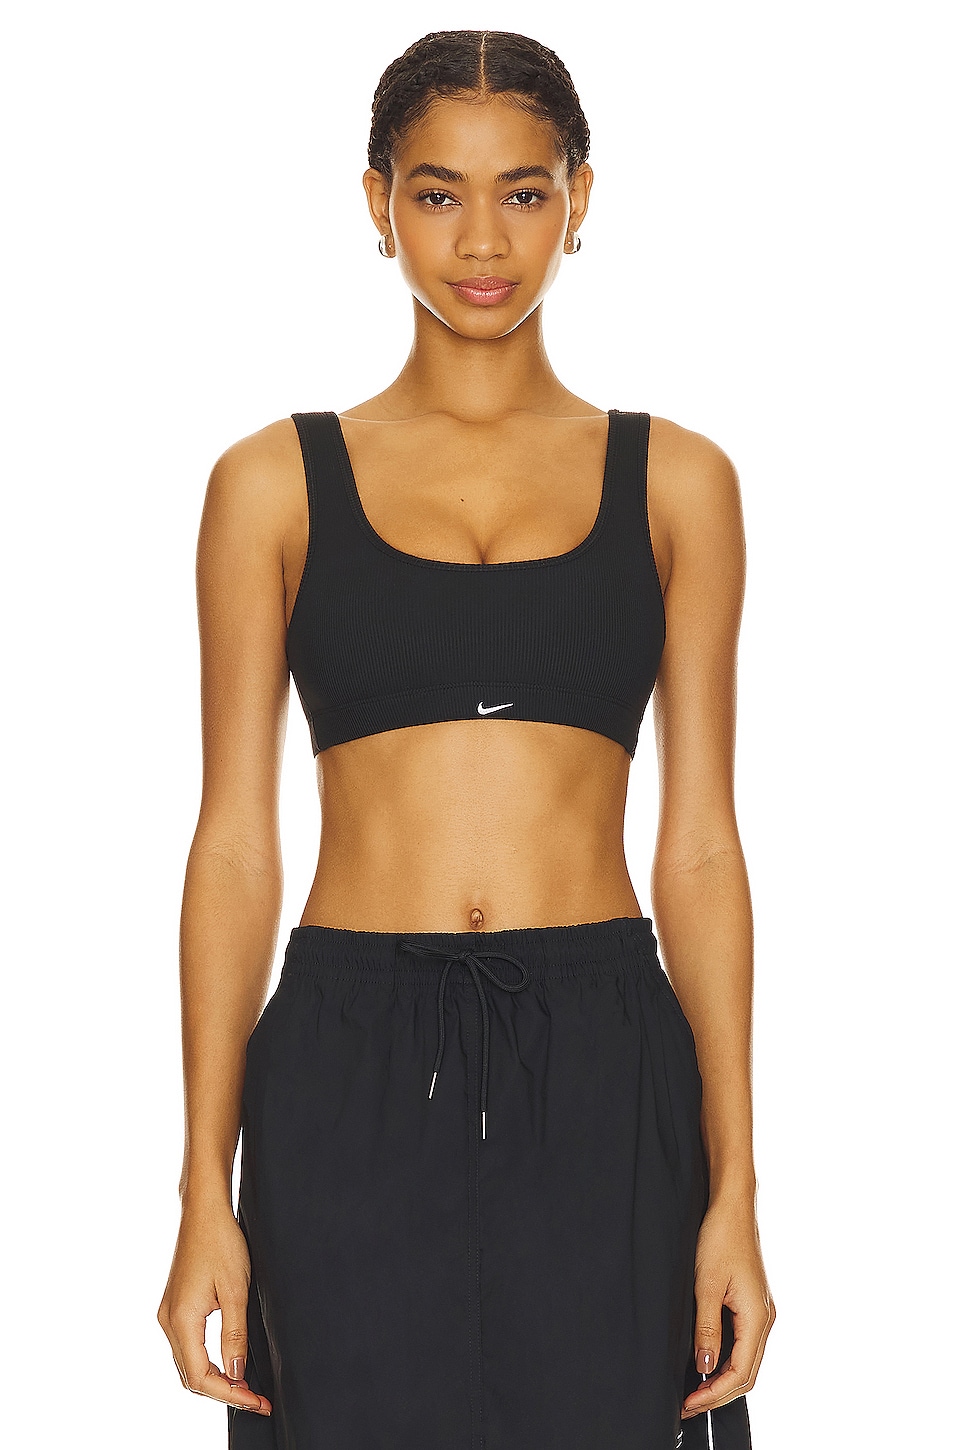 Nike White Dri-Fit Sports Bra Women's Size Small - beyond exchange